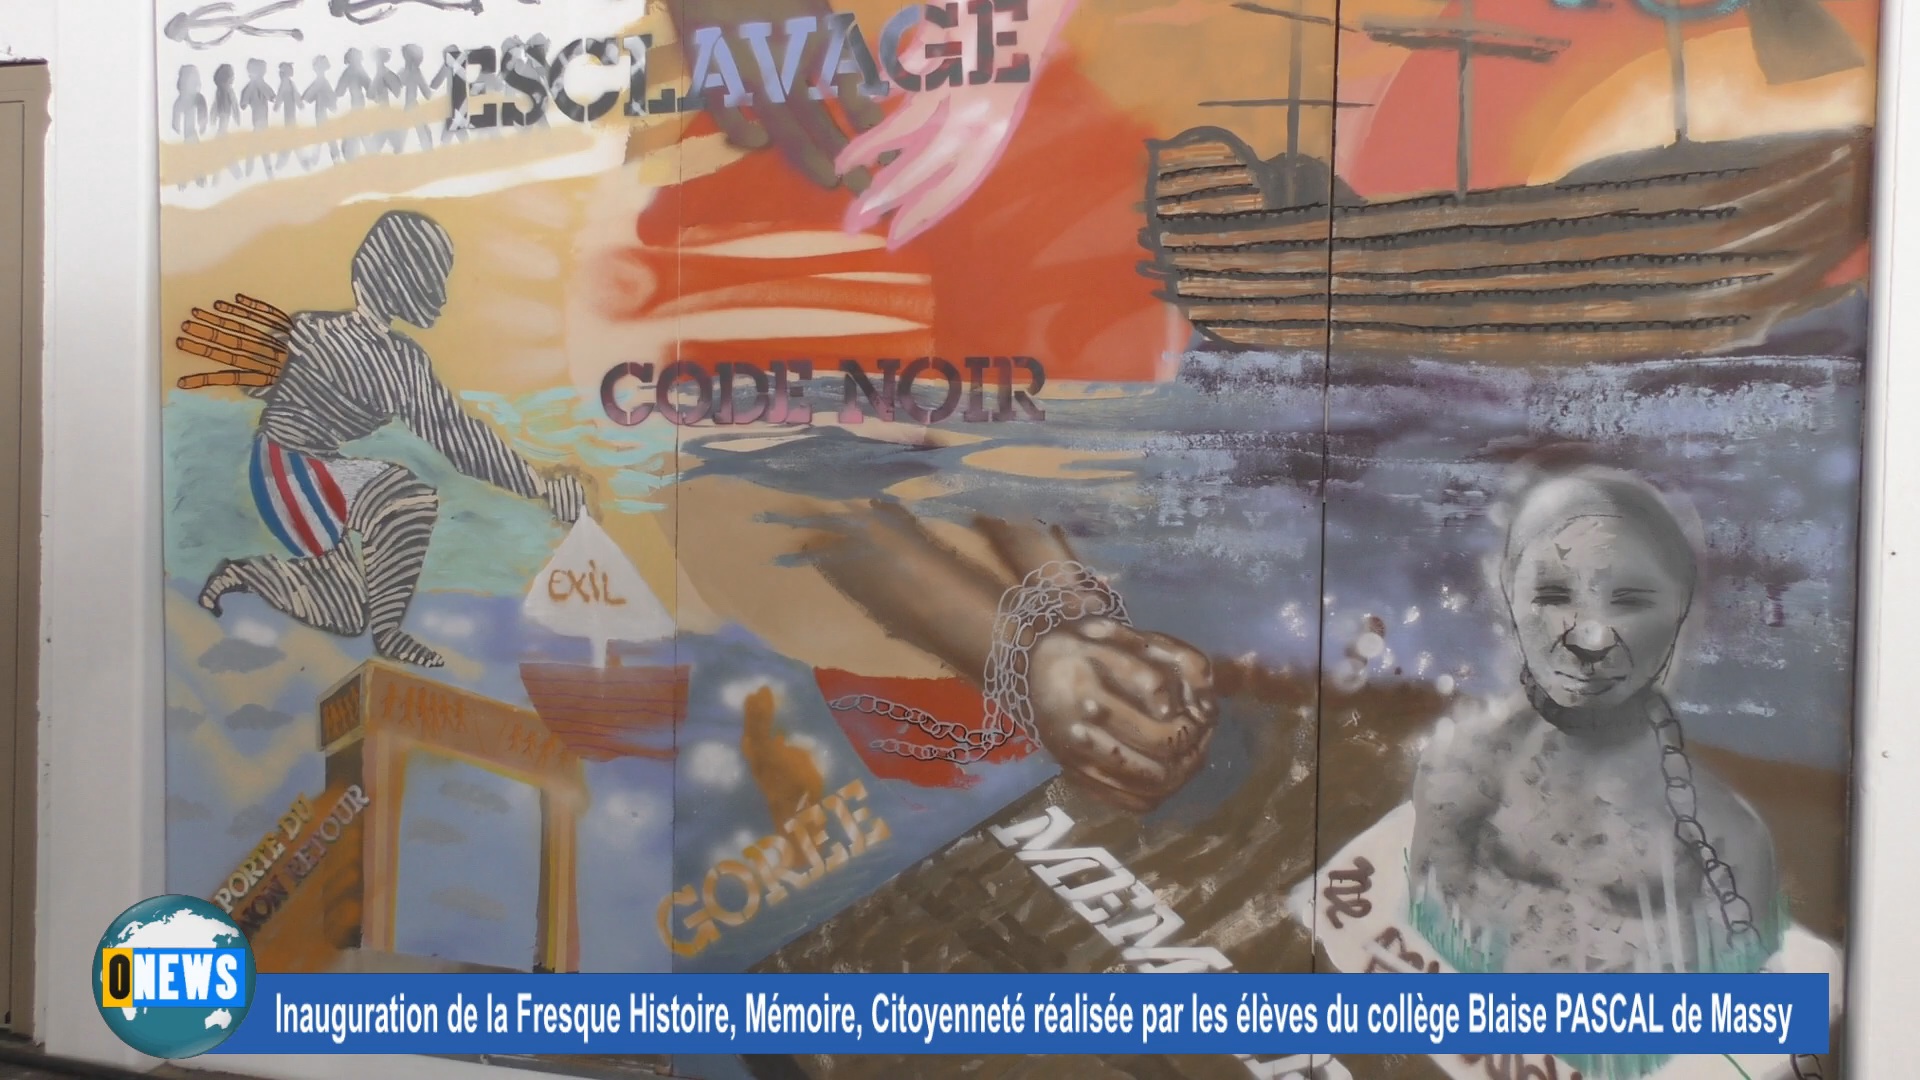 [Vidéo] Inauguration de la fresque Histoire, Mémoire, Citoyenneté réalisée par des élèves du Collège Blaise PASCAL de Massy